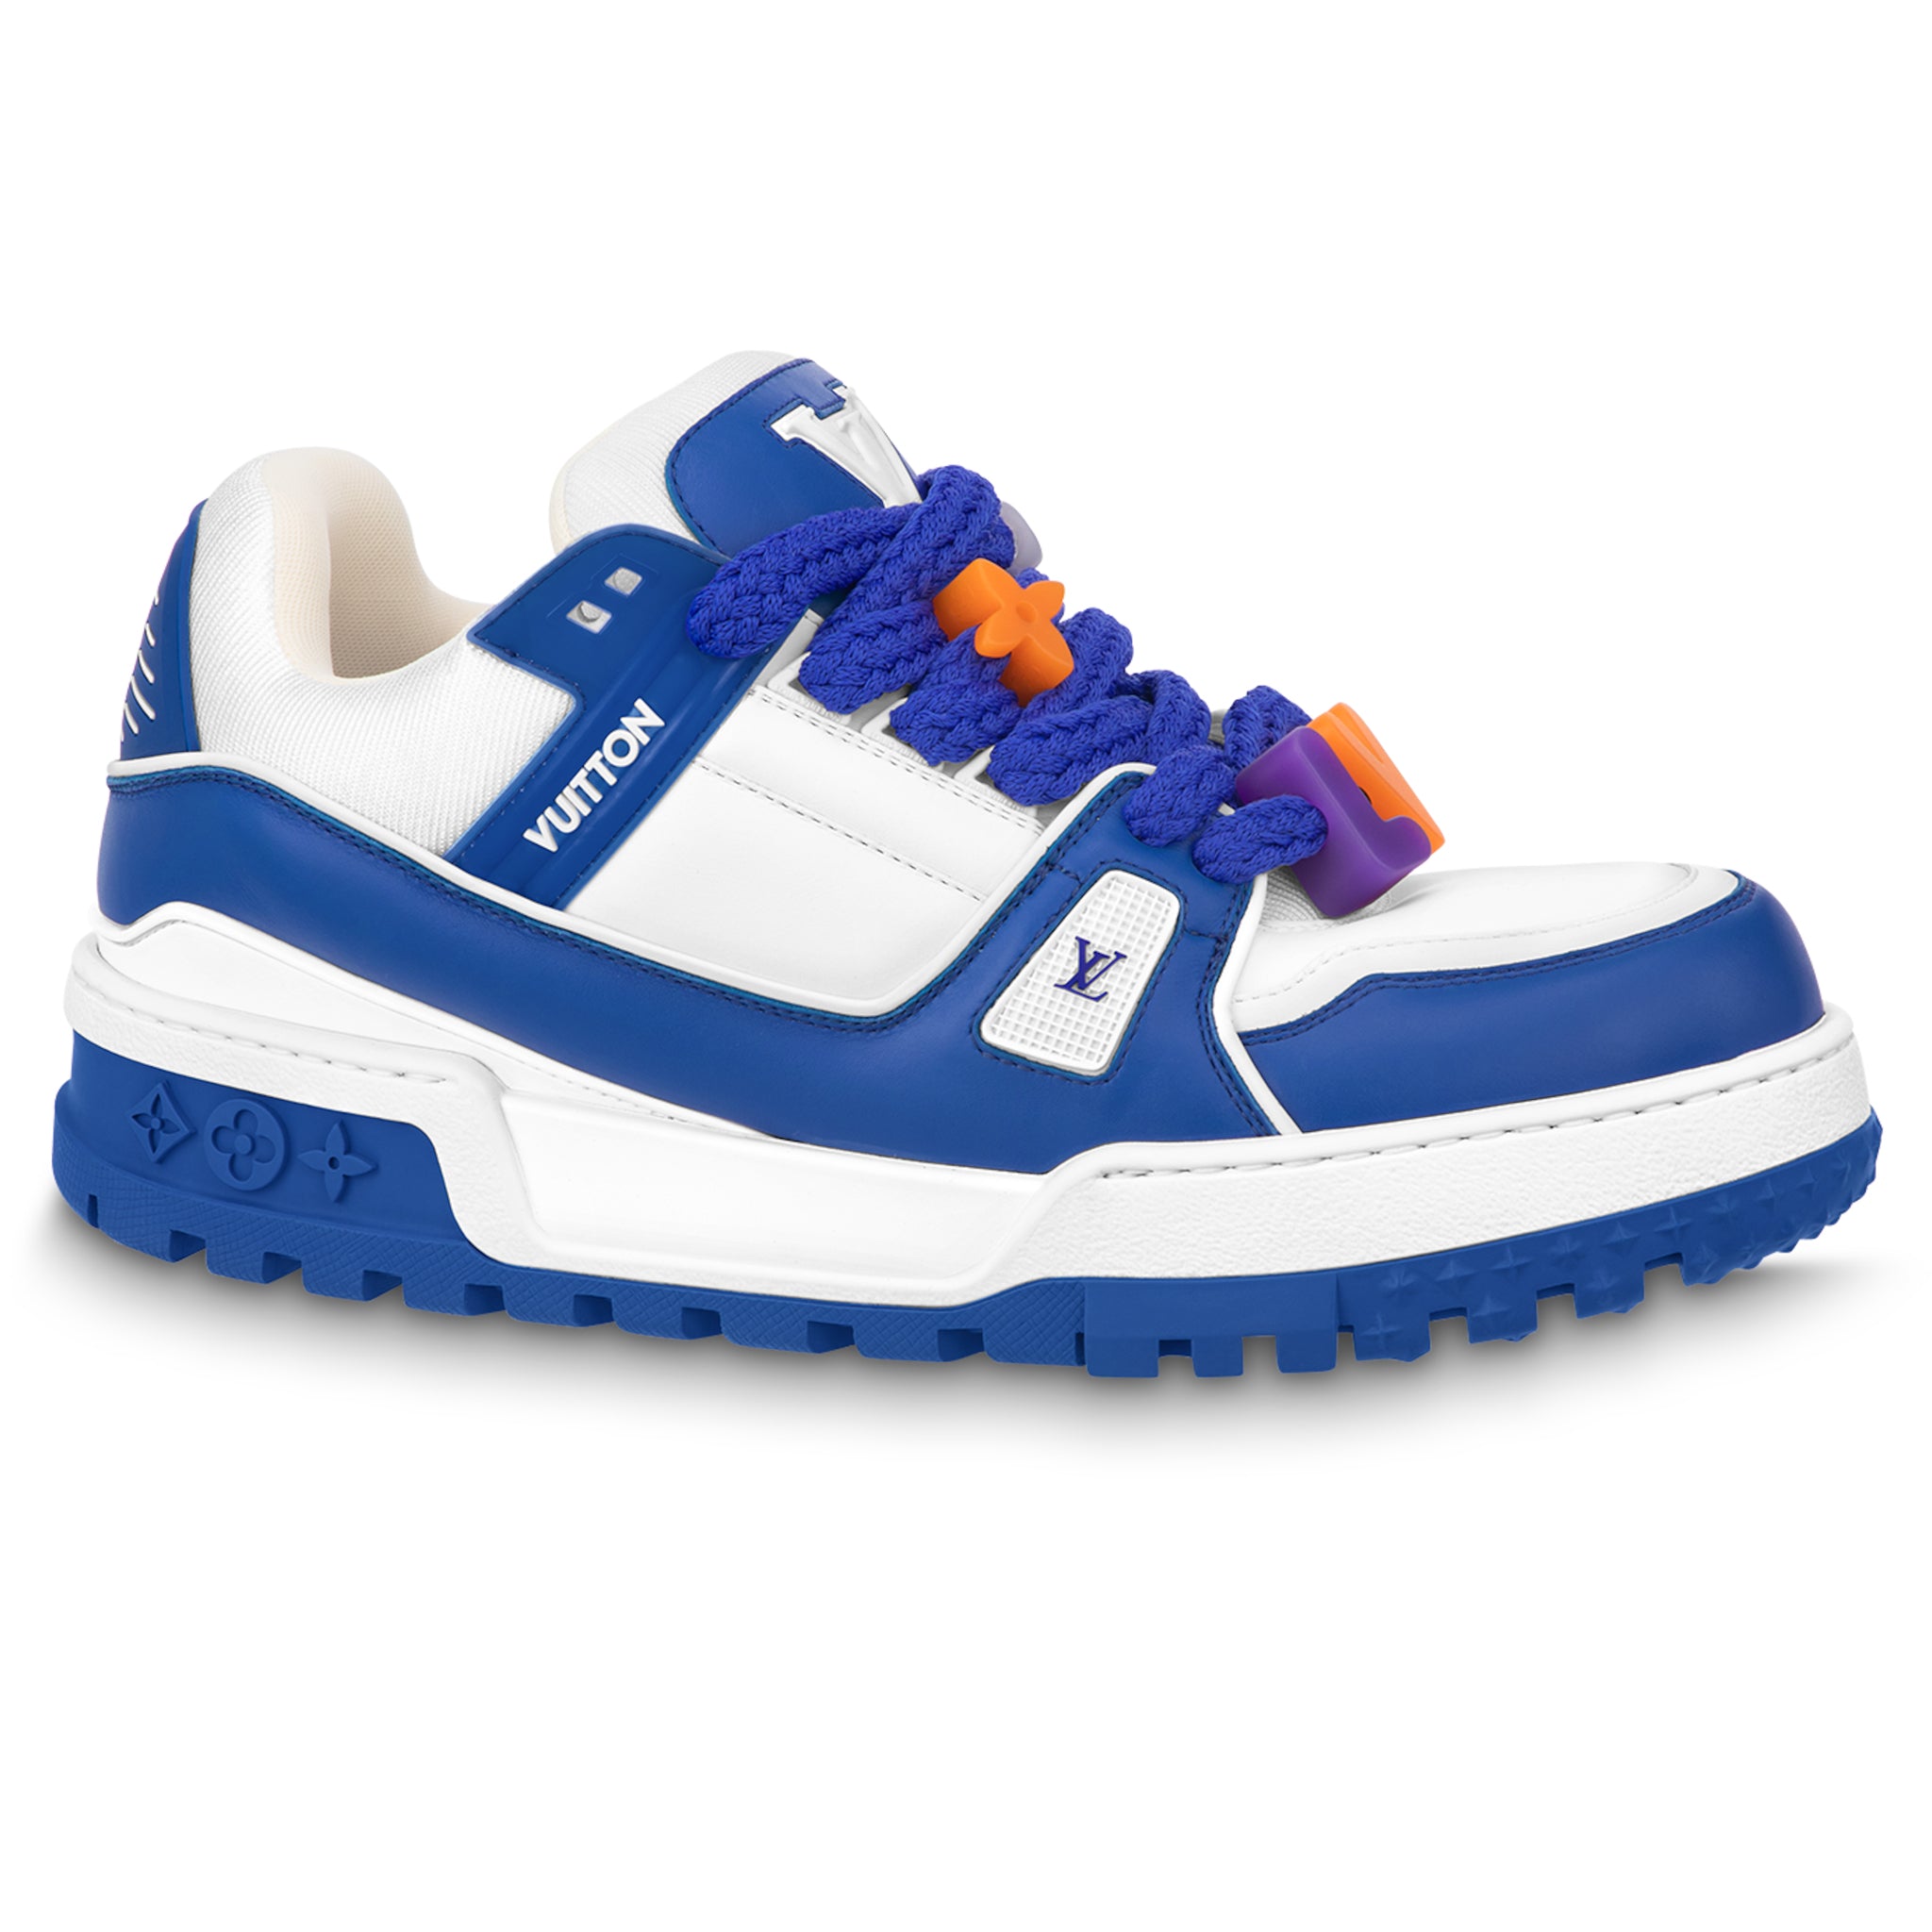 Louis Vuitton LV Trainer Sneaker Blue. Size 10.0